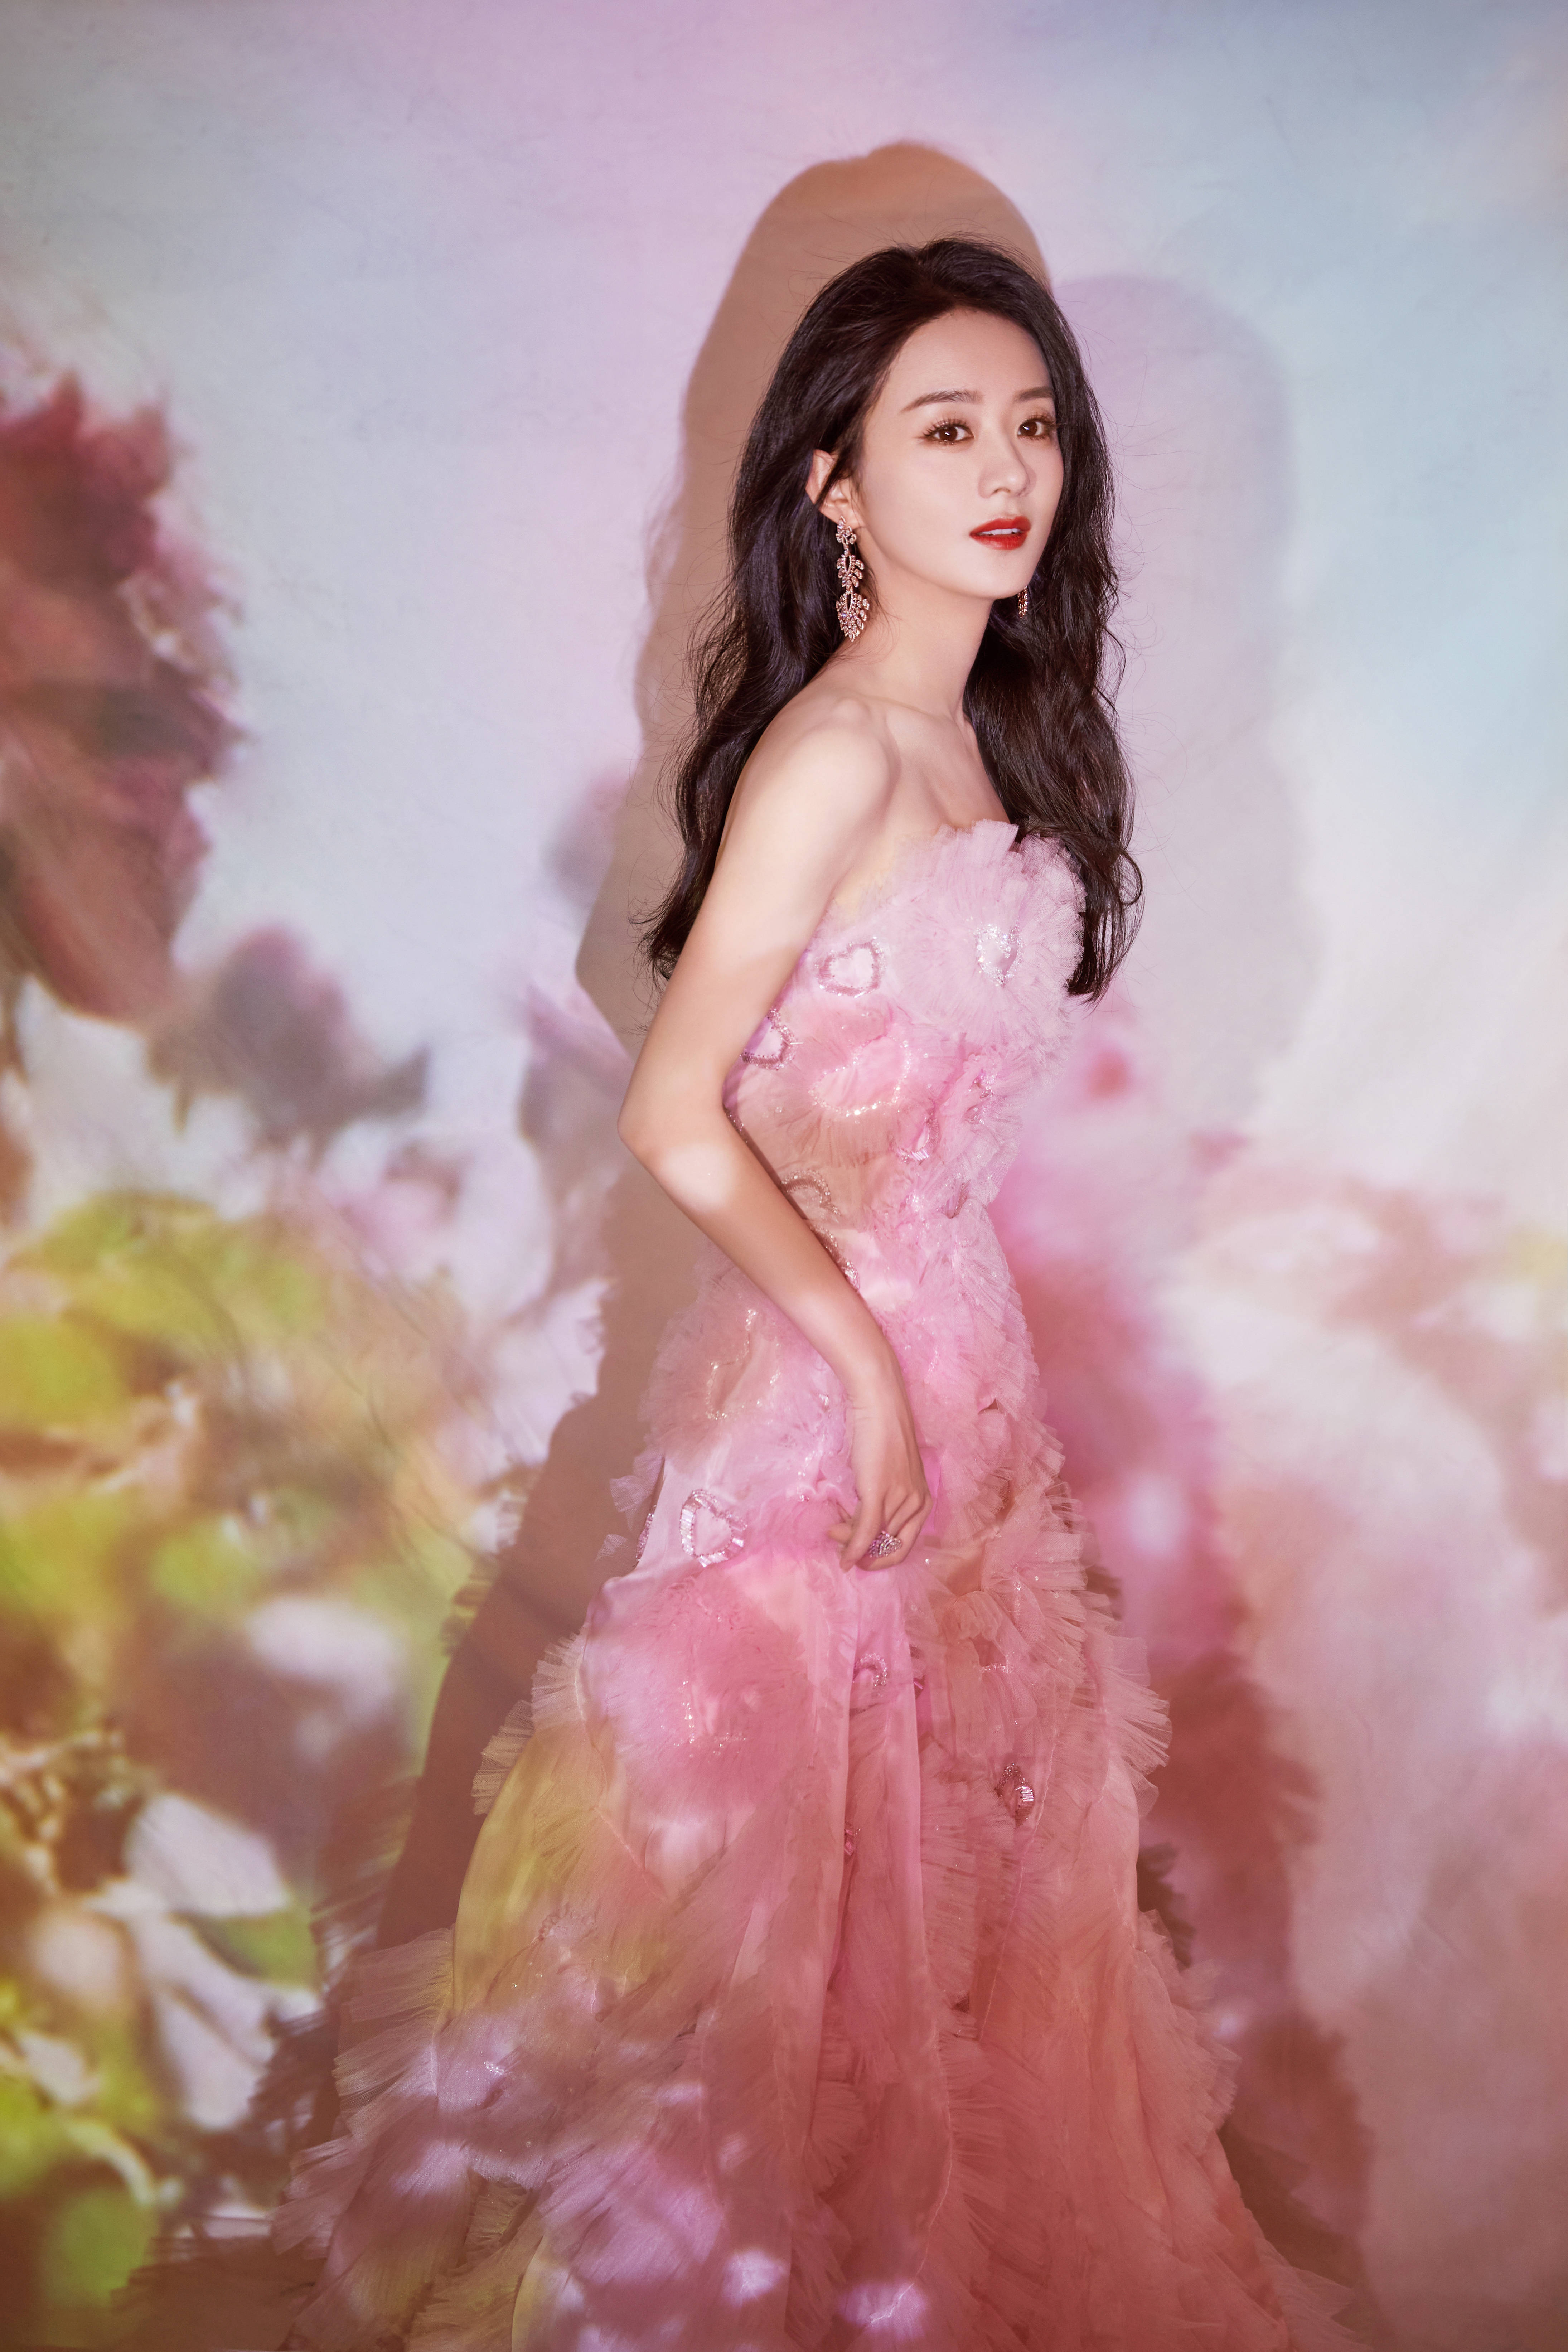 第一套,赵丽颖身穿粉色长裙似花仙子下凡